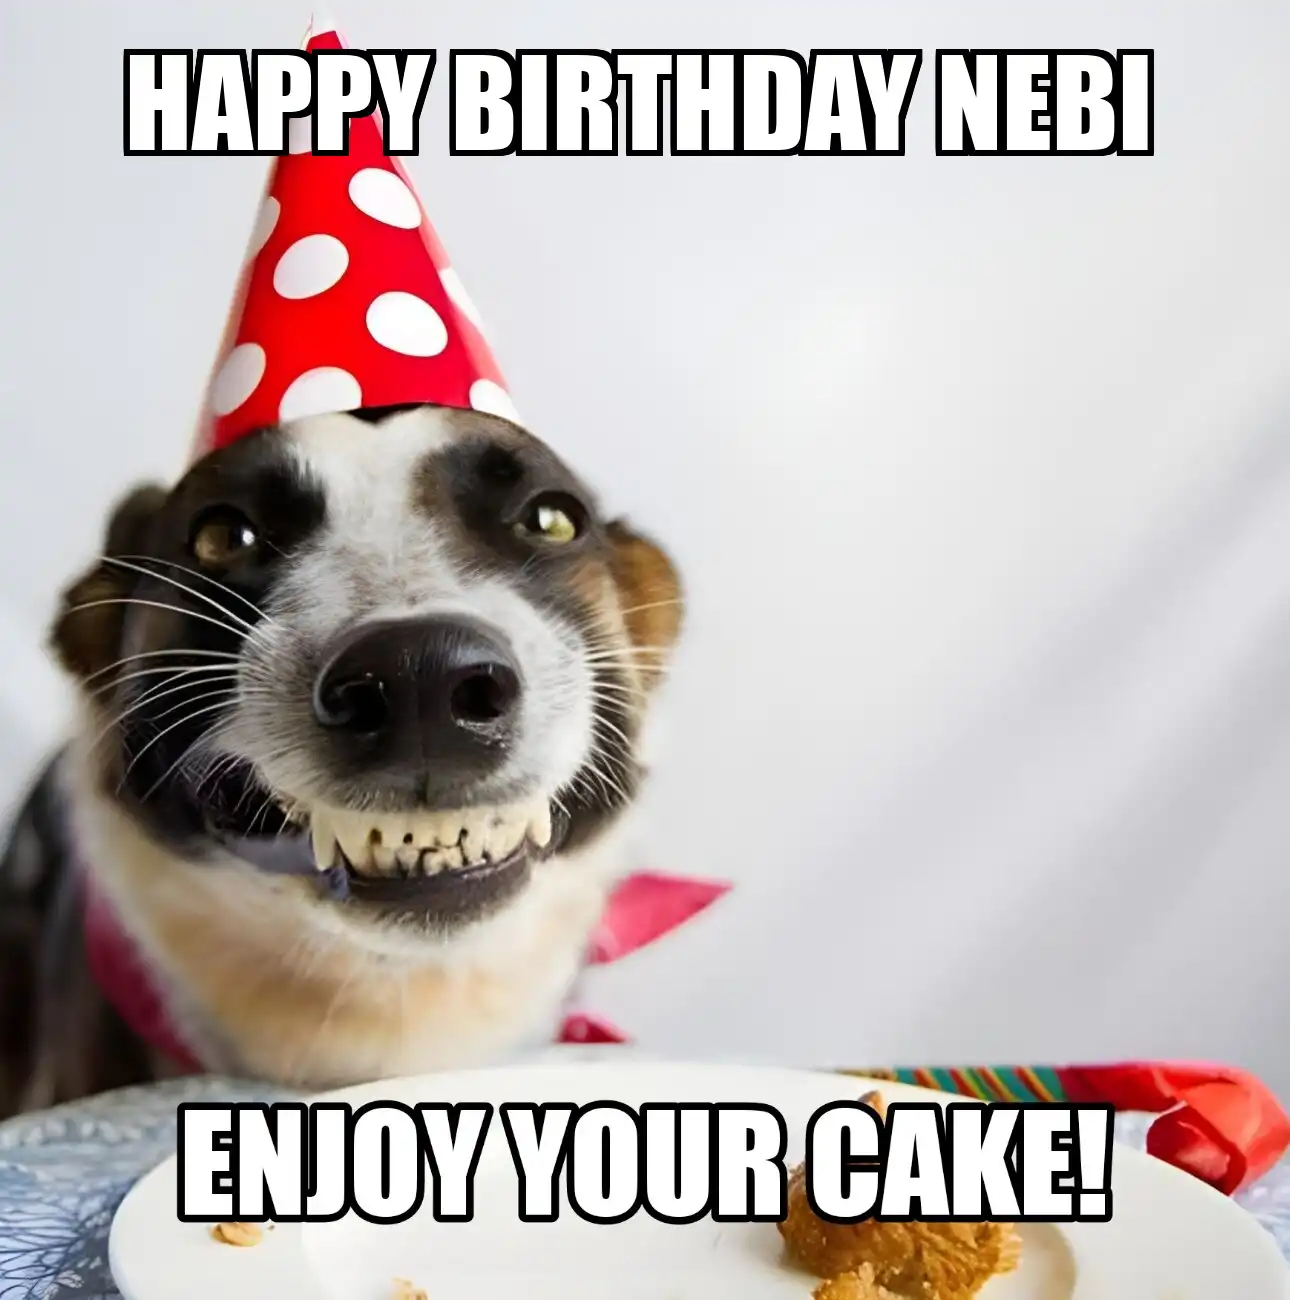 Happy Birthday Nebi Enjoy Your Cake Dog Meme